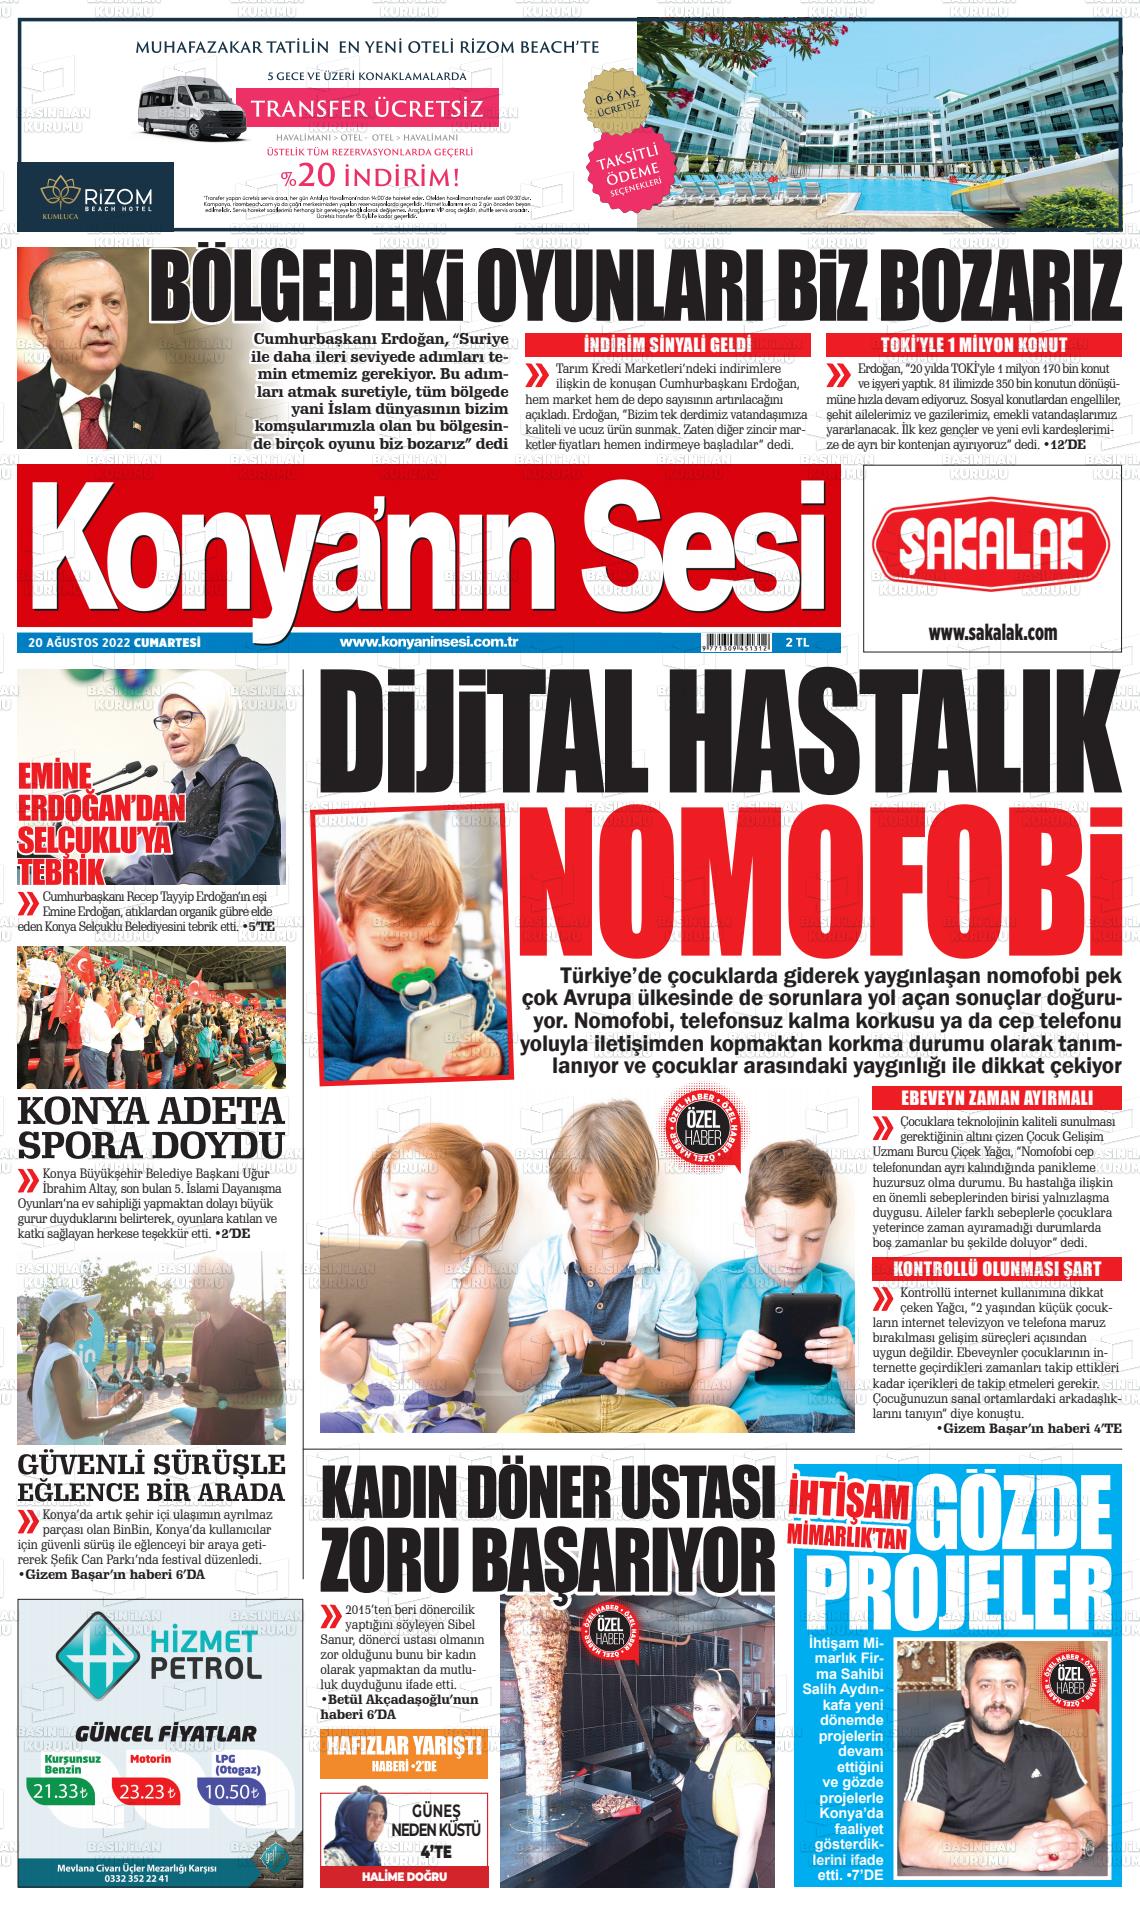 20 Ağustos 2022 Konyanin Sesi Gazete Manşeti